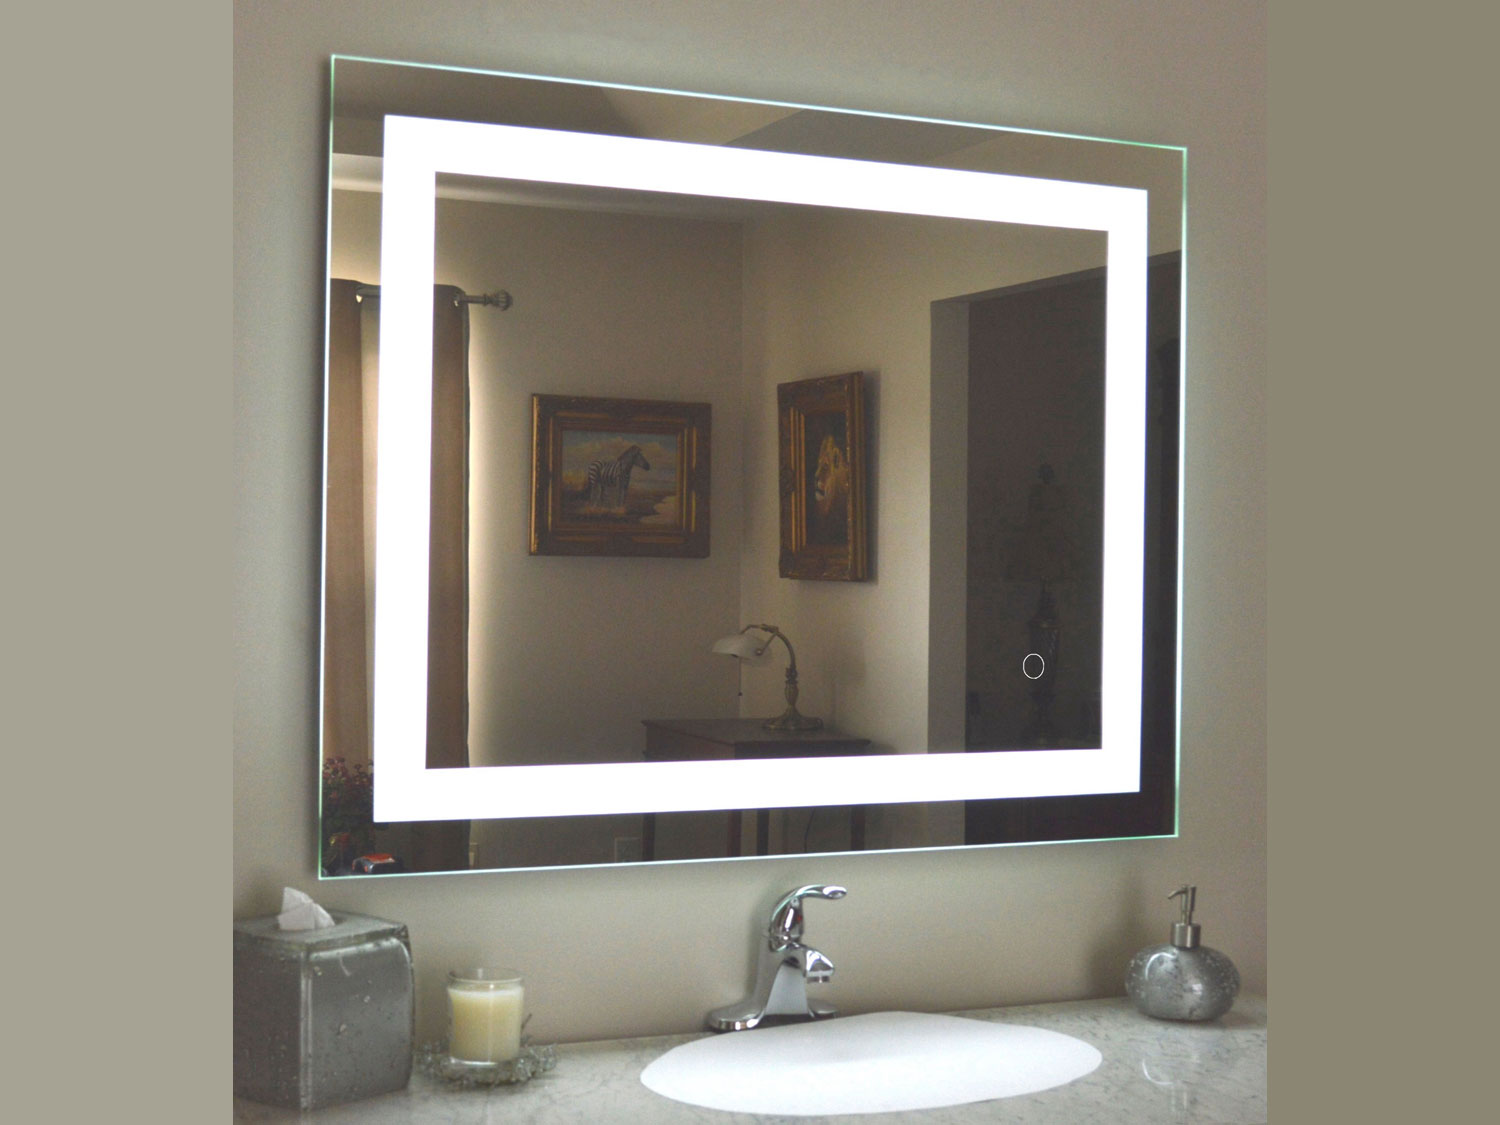 Mikado LED Rectangle Mirror